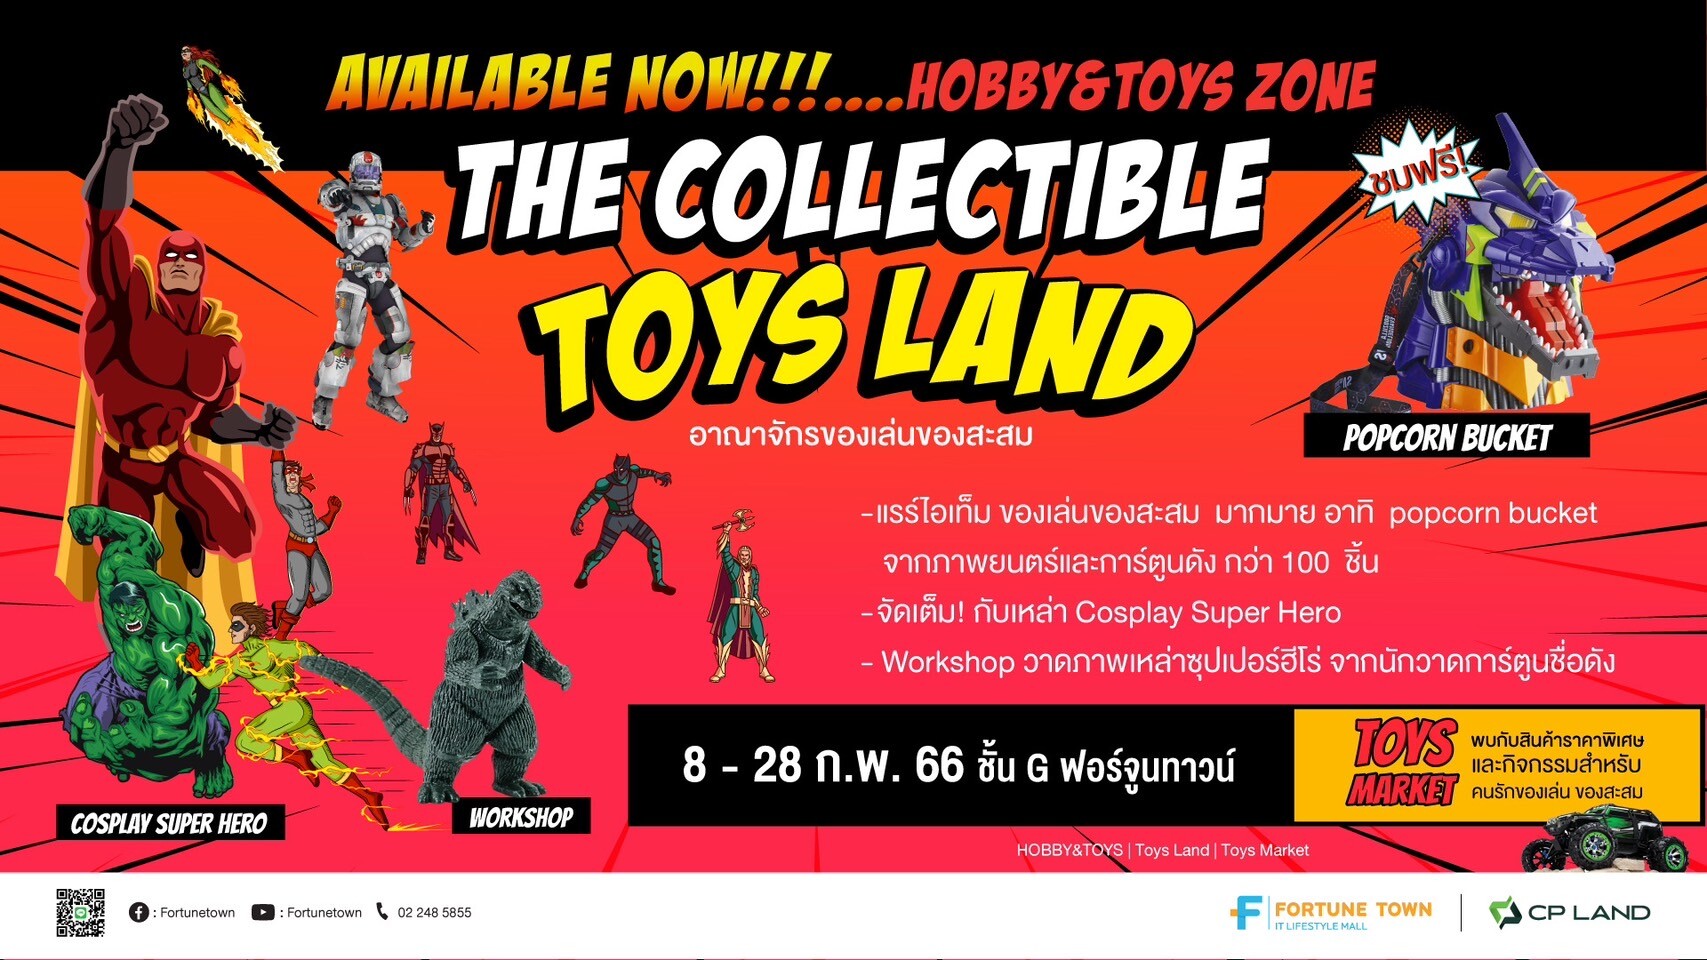 เอาใจสายของเล่นของสะสม ฟอร์จูนทาวน์ เปิดตัวโซนใหม่ Hobby &amp; Toys ยกทัพของเล่นของสะสม สินค้าแรร์ไอเทมมากมาย บนชั้น G พร้อมจัดงาน The Collectible Toys Land 8 - 22 กุมภาพันธ์นี้